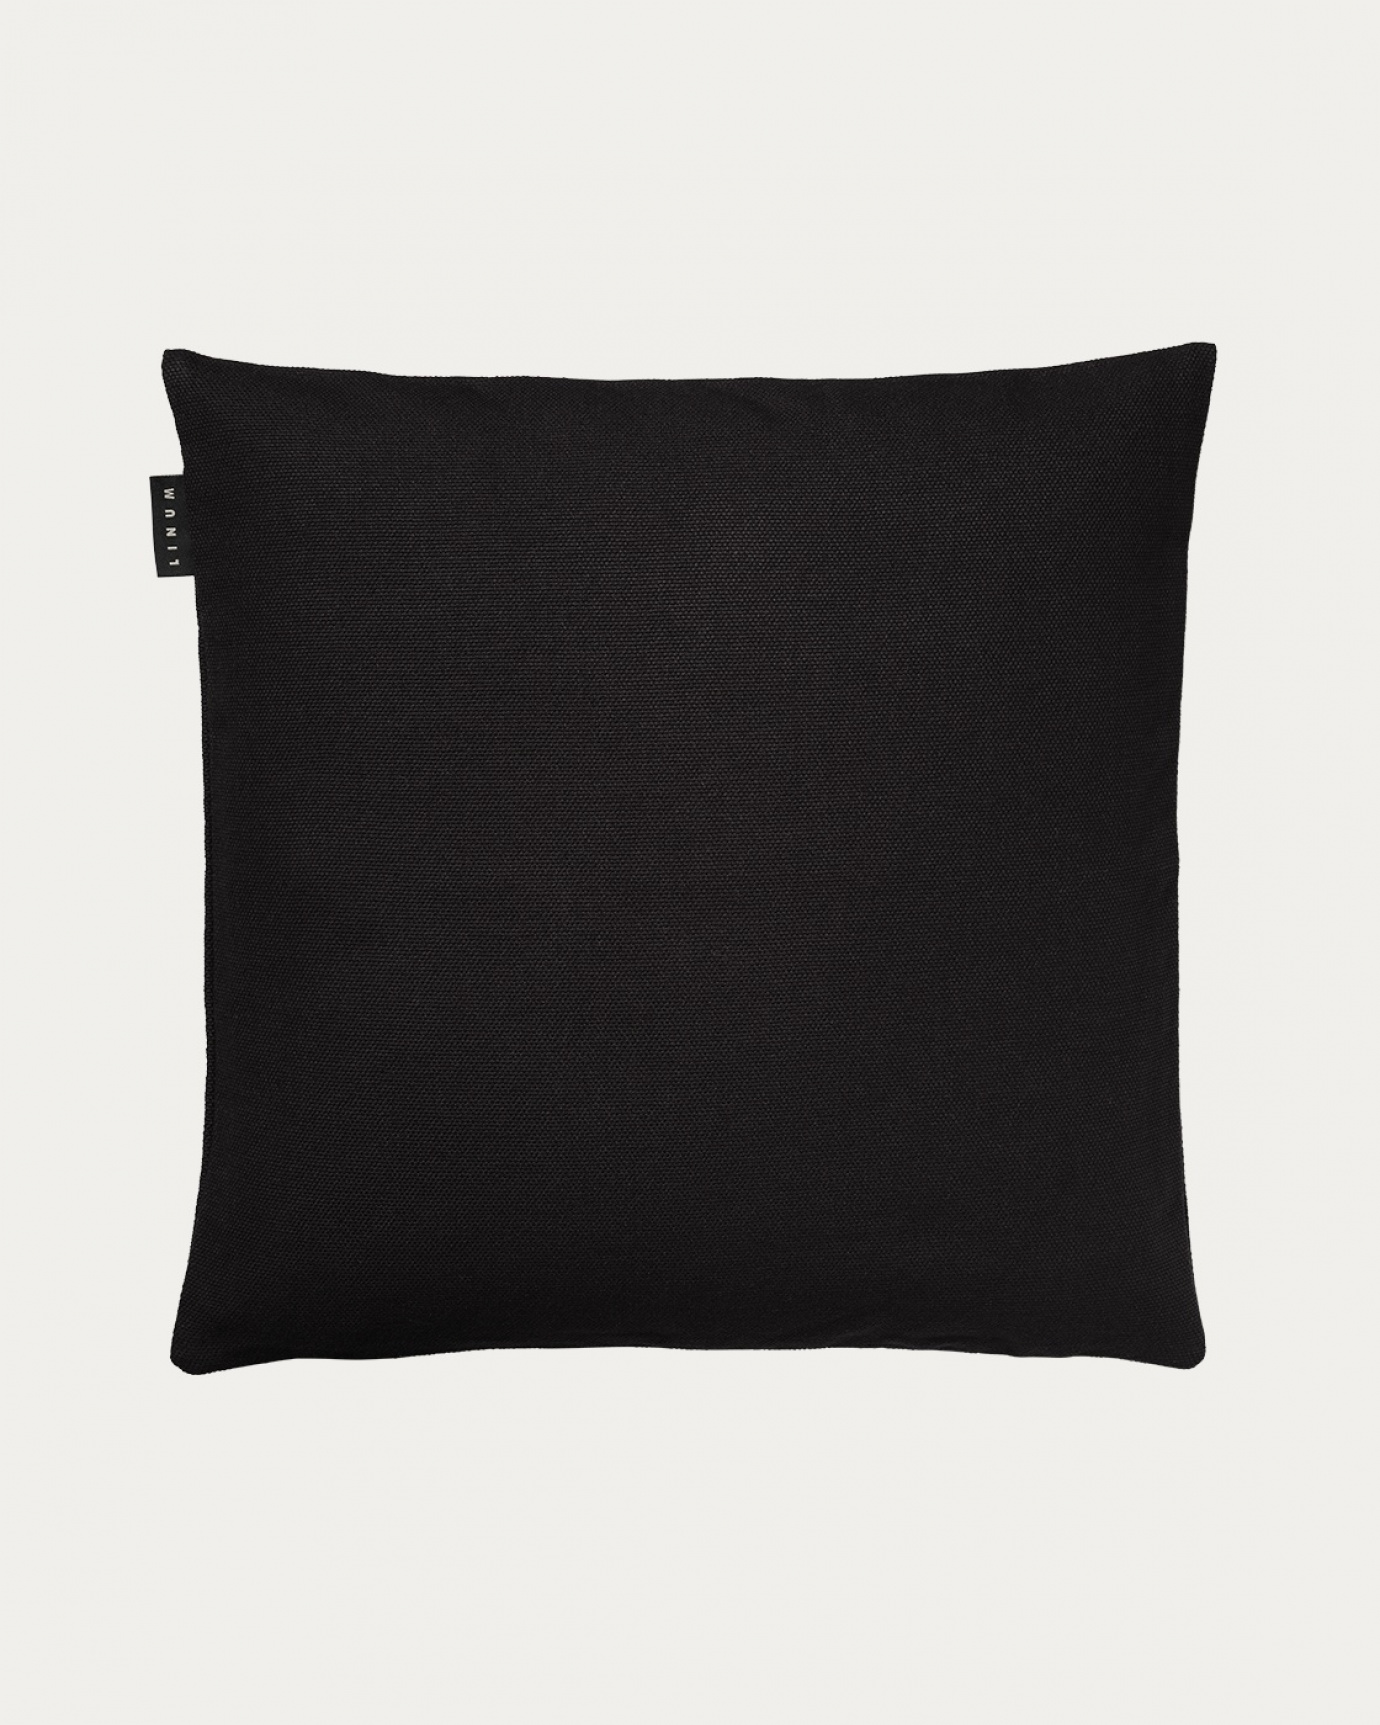 Produktbild schwarz PEPPER Kissenhülle aus weicher Baumwolle von LINUM DESIGN. Einfach zu waschen und langlebig für Generationen. Größe 50x50 cm.